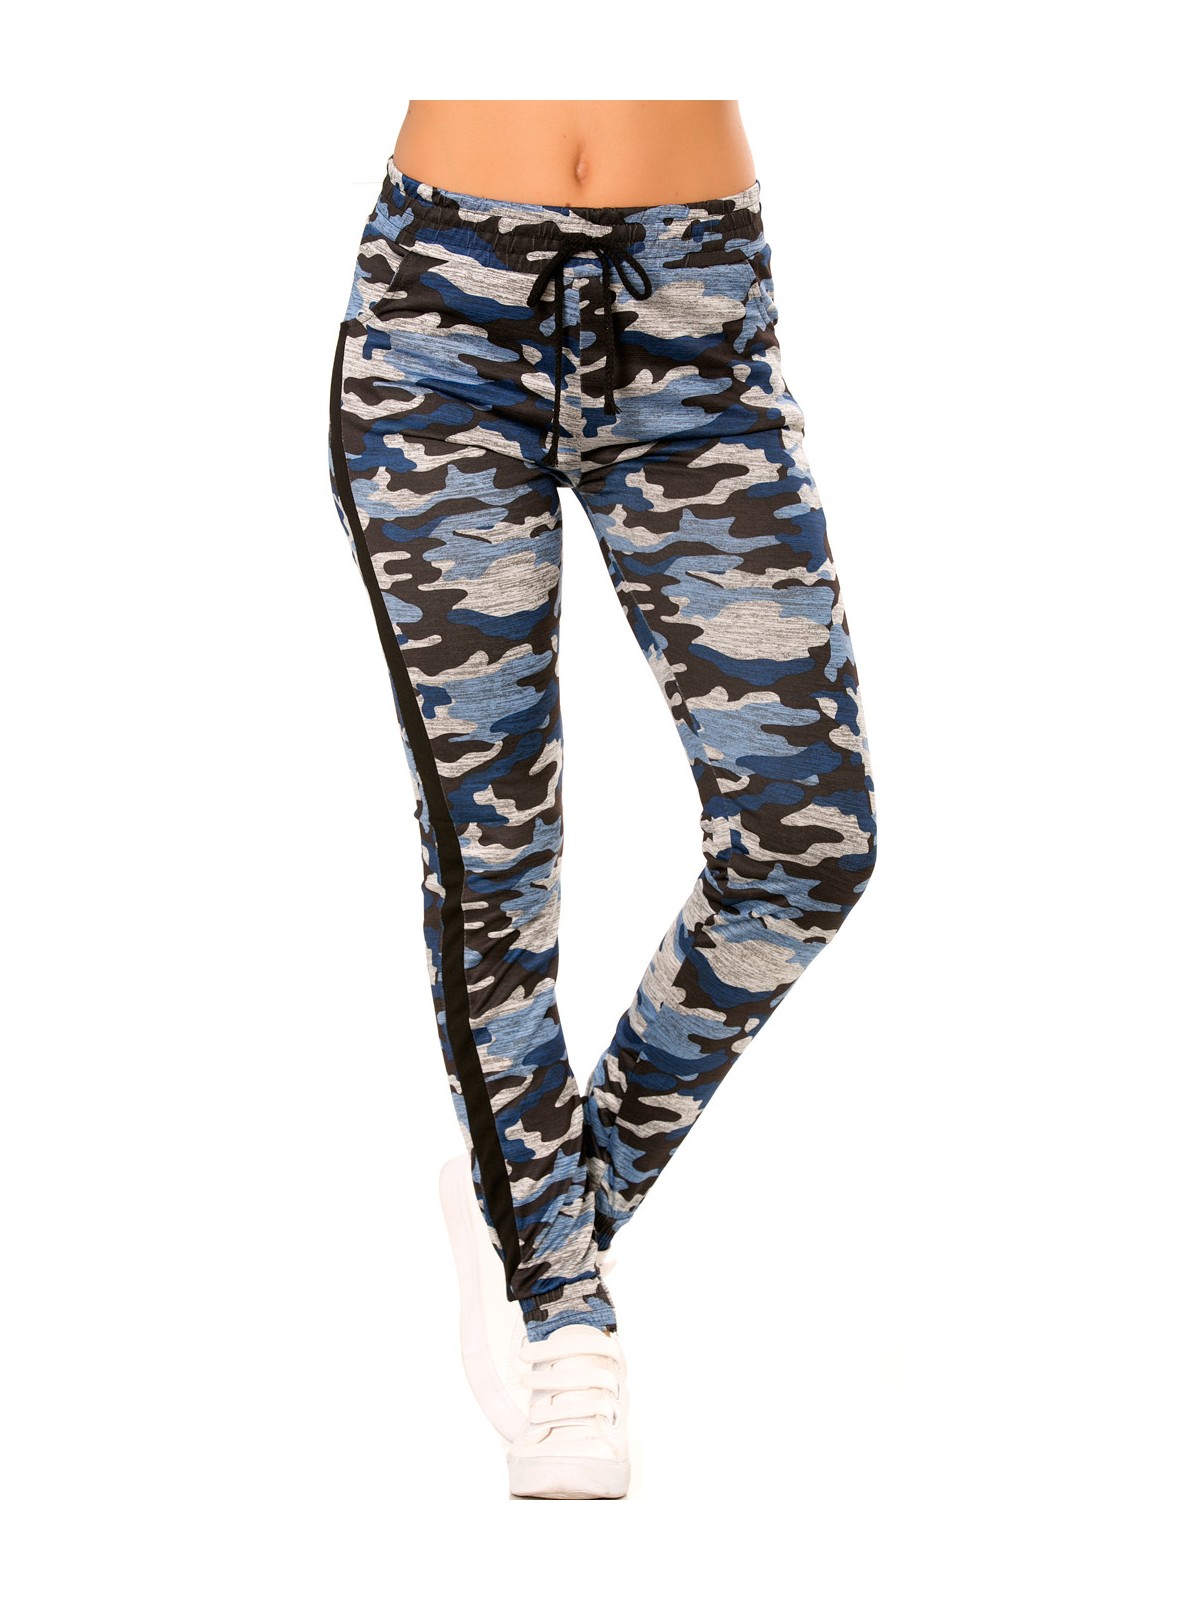 Pantalon jogging militaire bleu avec poches et bandes noires. Enleg 9-104A. - 5